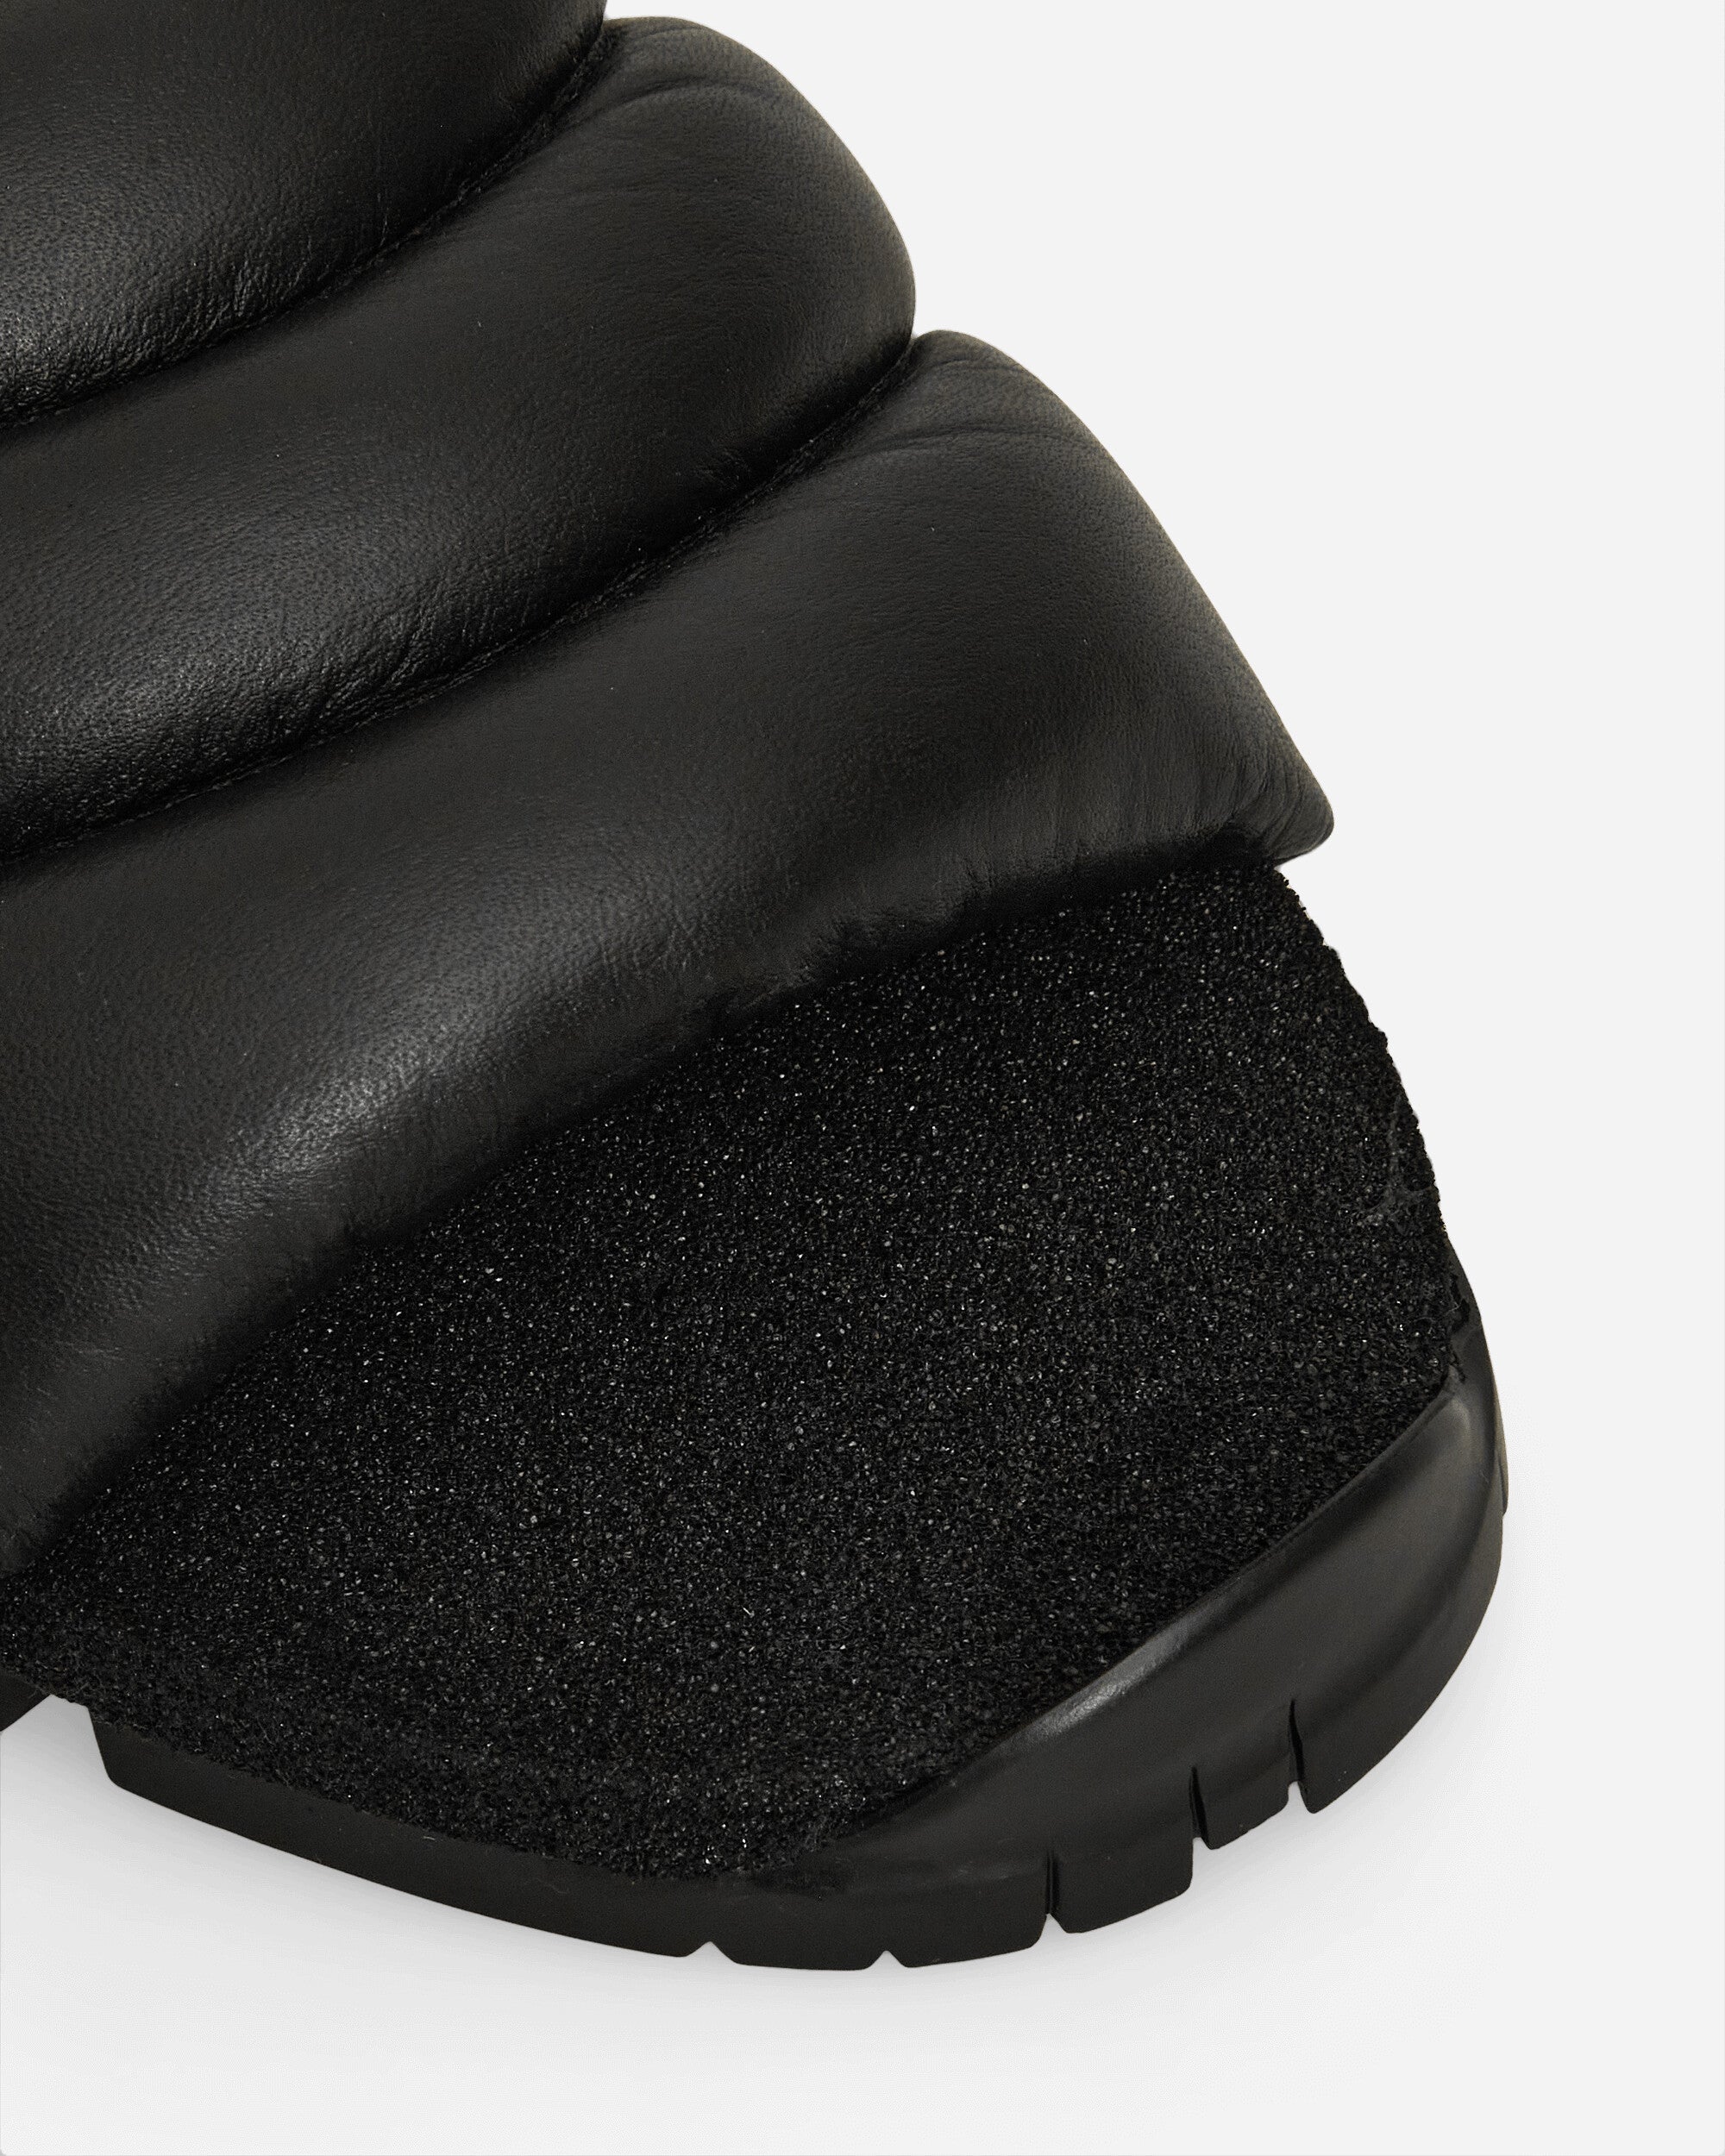 Demon Zhavata Black Black Sandals and Slides Sandals and Mules ZHAVATABLACK BLACK